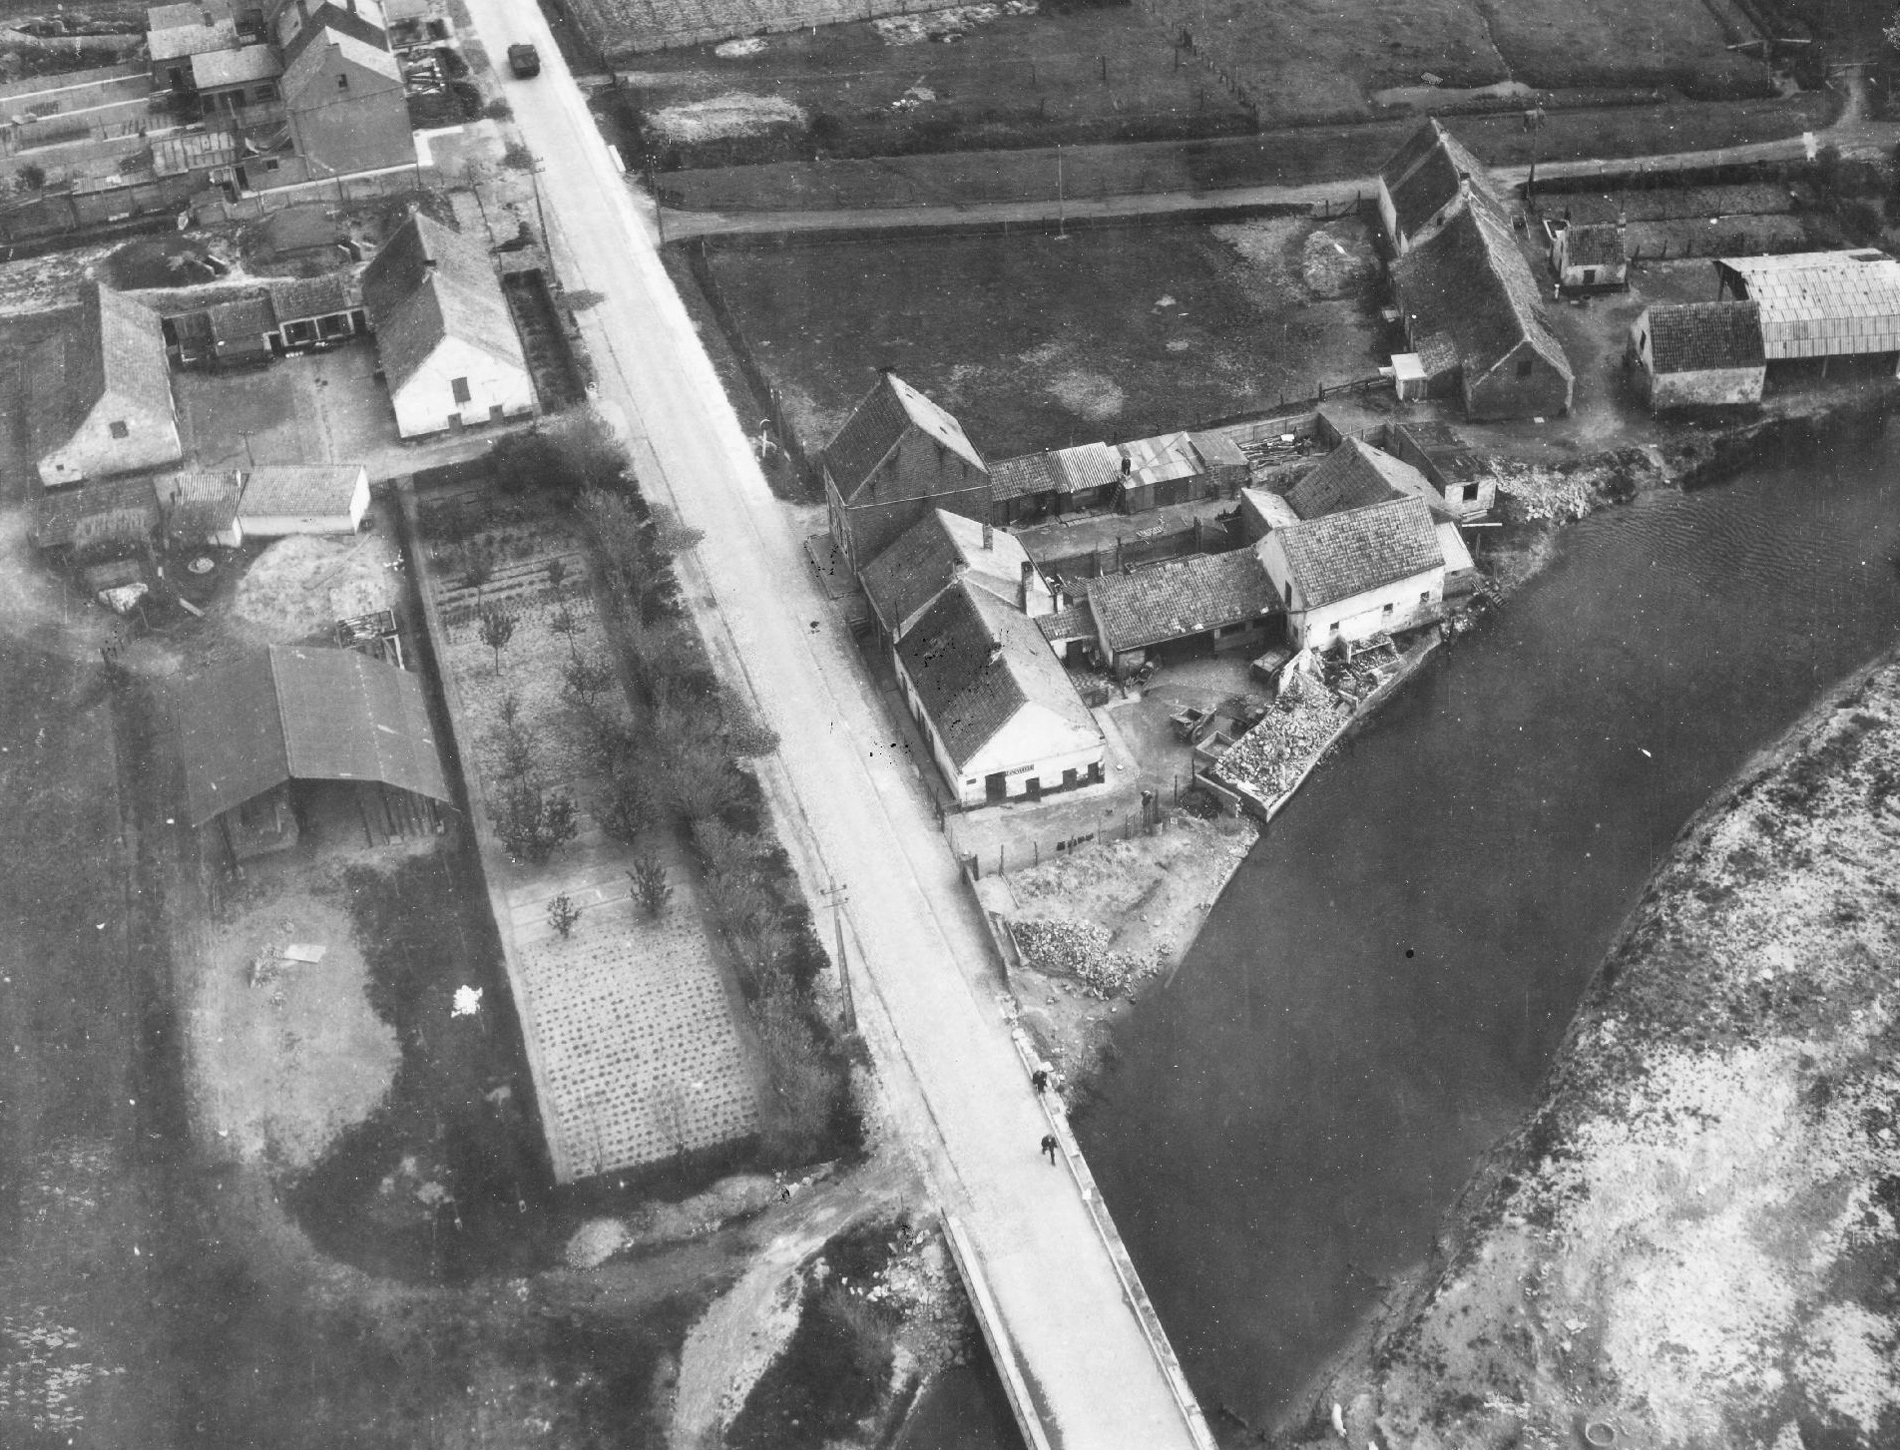 Luftbild der Zandvoordestraat vor der Brücke über den Gauwelozekreek mit Panzer in Ostende (Belgien)